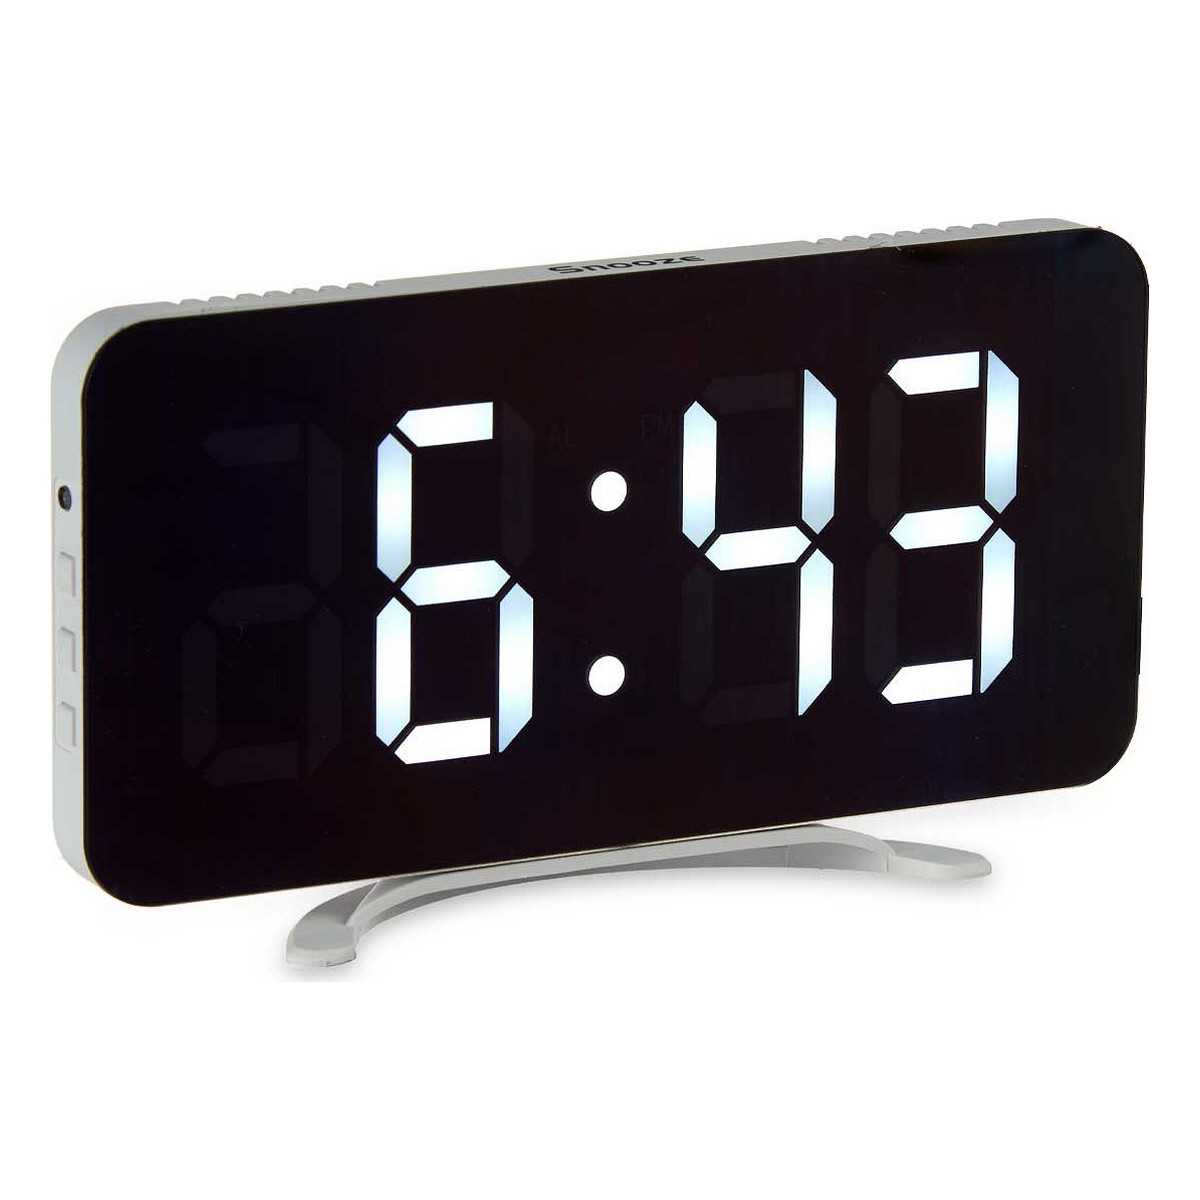 Digitale Desktop-Uhr Spiegel Wei ABS 15,7 x 7,7 x 1,5 cm